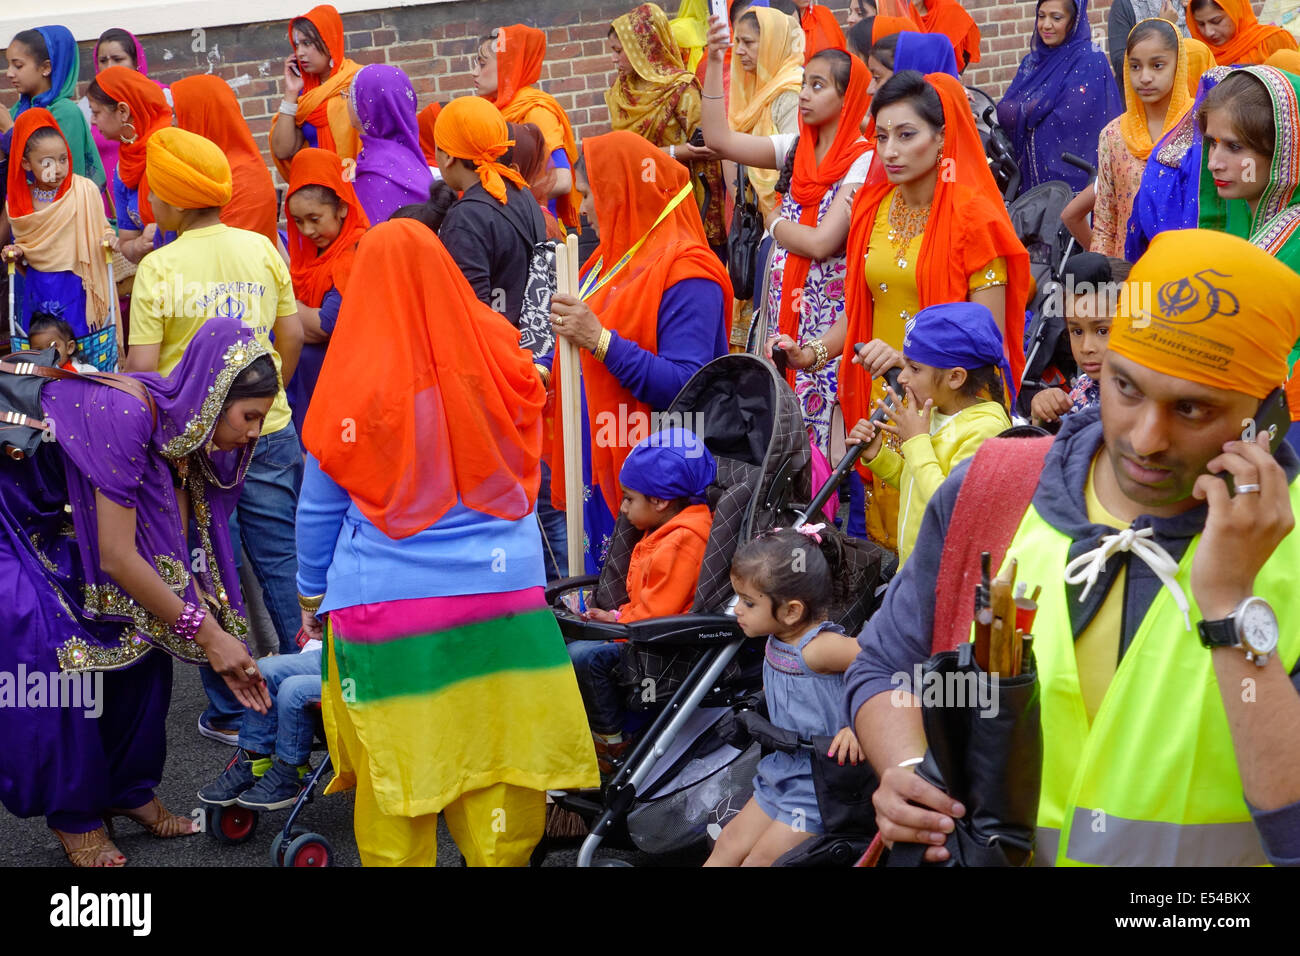 Middlesbrough, Regno Unito. Il 20 luglio, 2014. L annuale Nagar Kirtan Parade celebra la cultura Sikh nel nord-est dell' Inghilterra ha avuto luogo in Middlesbrough Cleveland UK oggi è domenica 20 luglio. Il corteo è guidato da cinque zafferano derubato gli uomini che portano un galleggiante che porta il Guru Granth Sahib i sikh la Sacra Scrittura. Membri della processione è a piedi nudi in ossequio alla scrittura così visualizzato. Essi sono preceduti da spazzatrici pulizia della strada. Questa immagine mostra i sikh famiglie pronte a seguire il galleggiante sul retro della sfilata Credito: Pietro Giordano NE/Alamy Live News Foto Stock